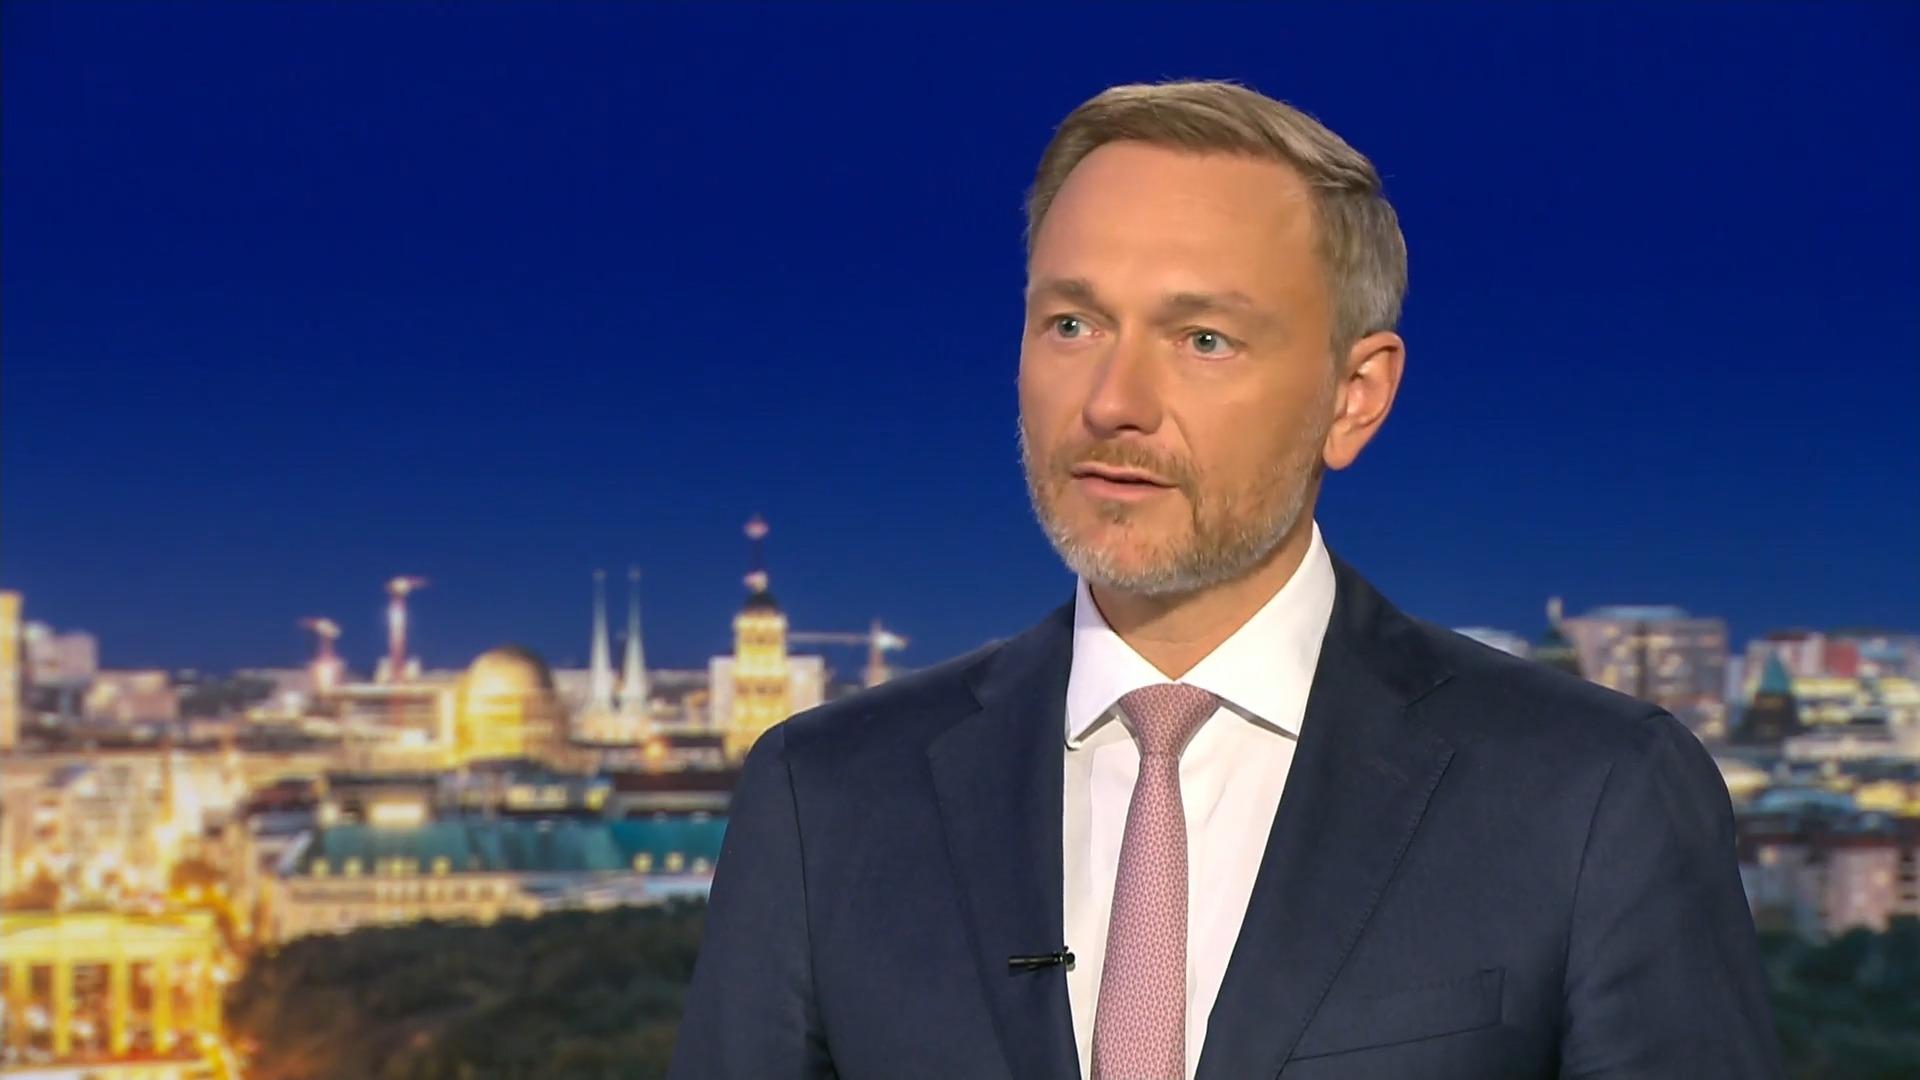 200 Milliarden für Abwehrschirm: Was sagt der Finanzminister Lindner bei RTL Direkt